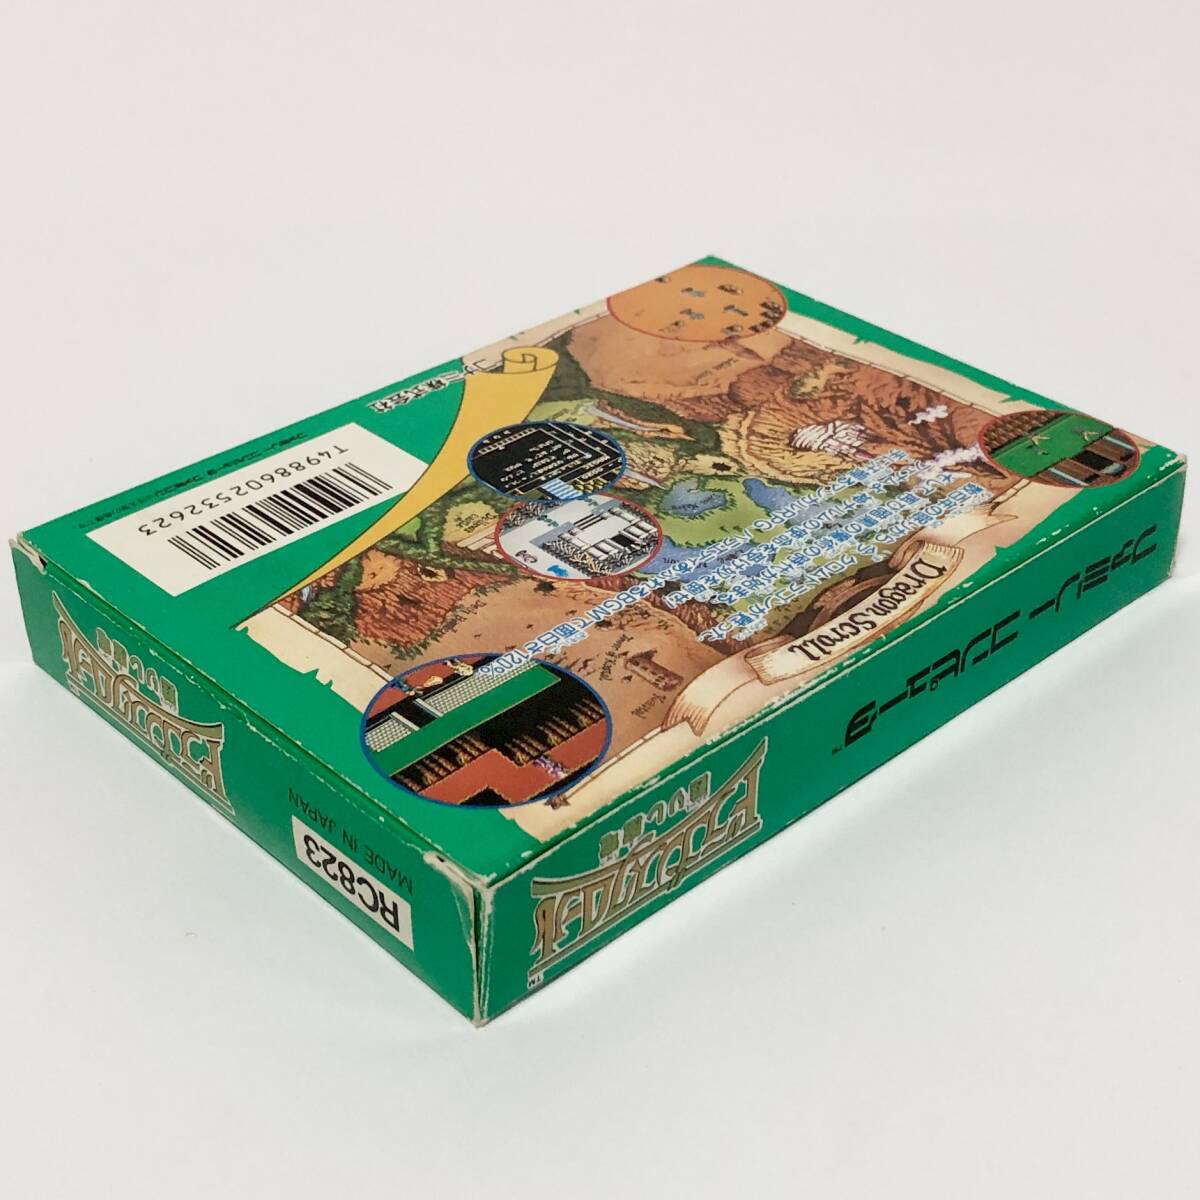 ファミコン ドラゴンスクロール 甦りし魔竜 箱説付き カード付き 痛みあり コナミ Nintendo Famicom Dragon Scroll CIB Tested Konamiの画像5